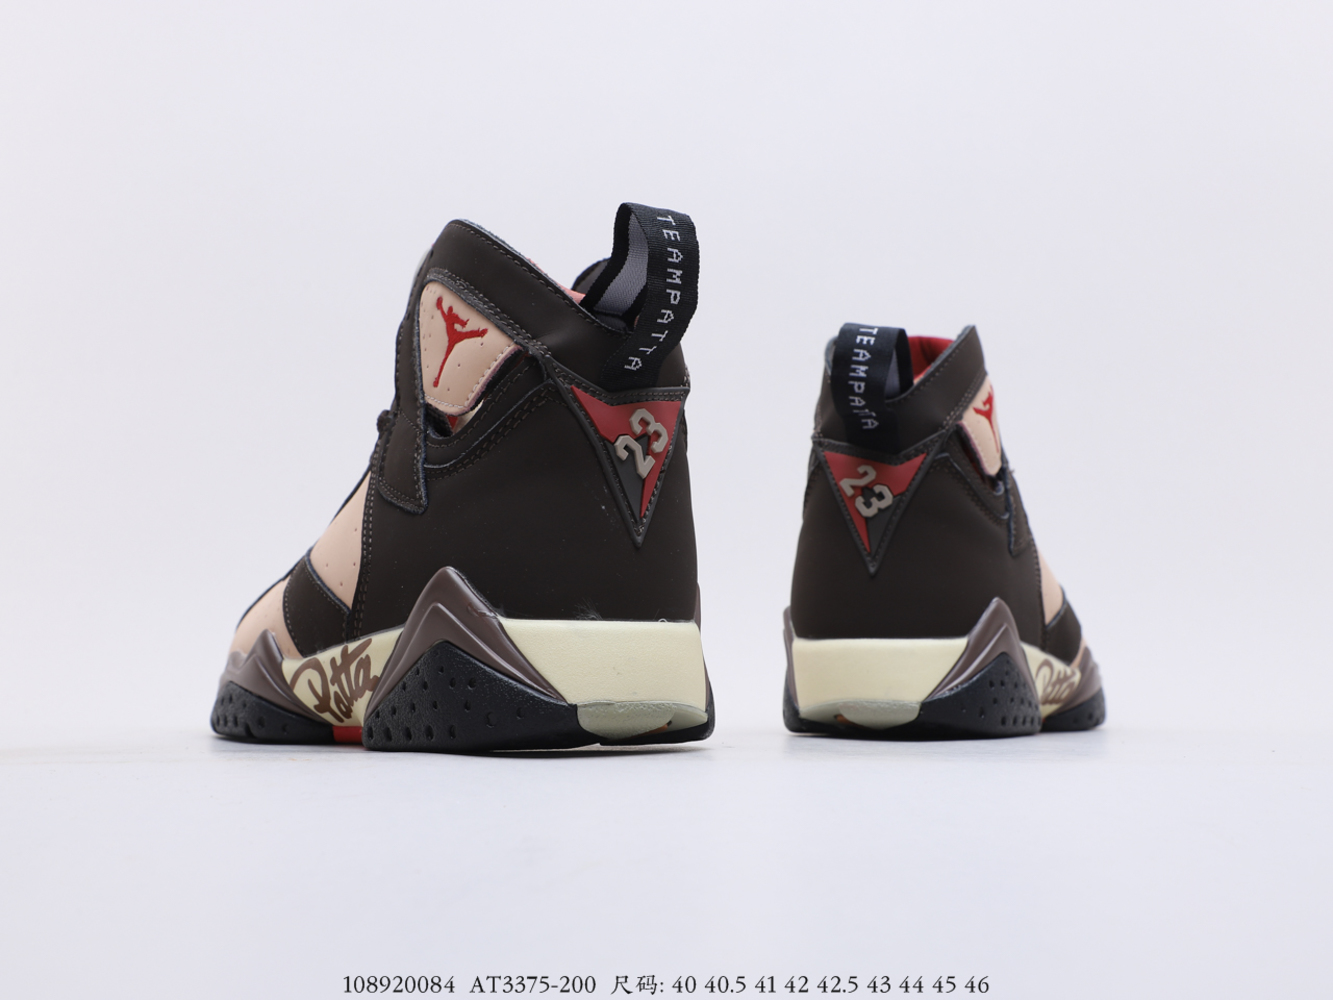 Air Jordan 7 Retro Patta Shimmer_AT3375-200